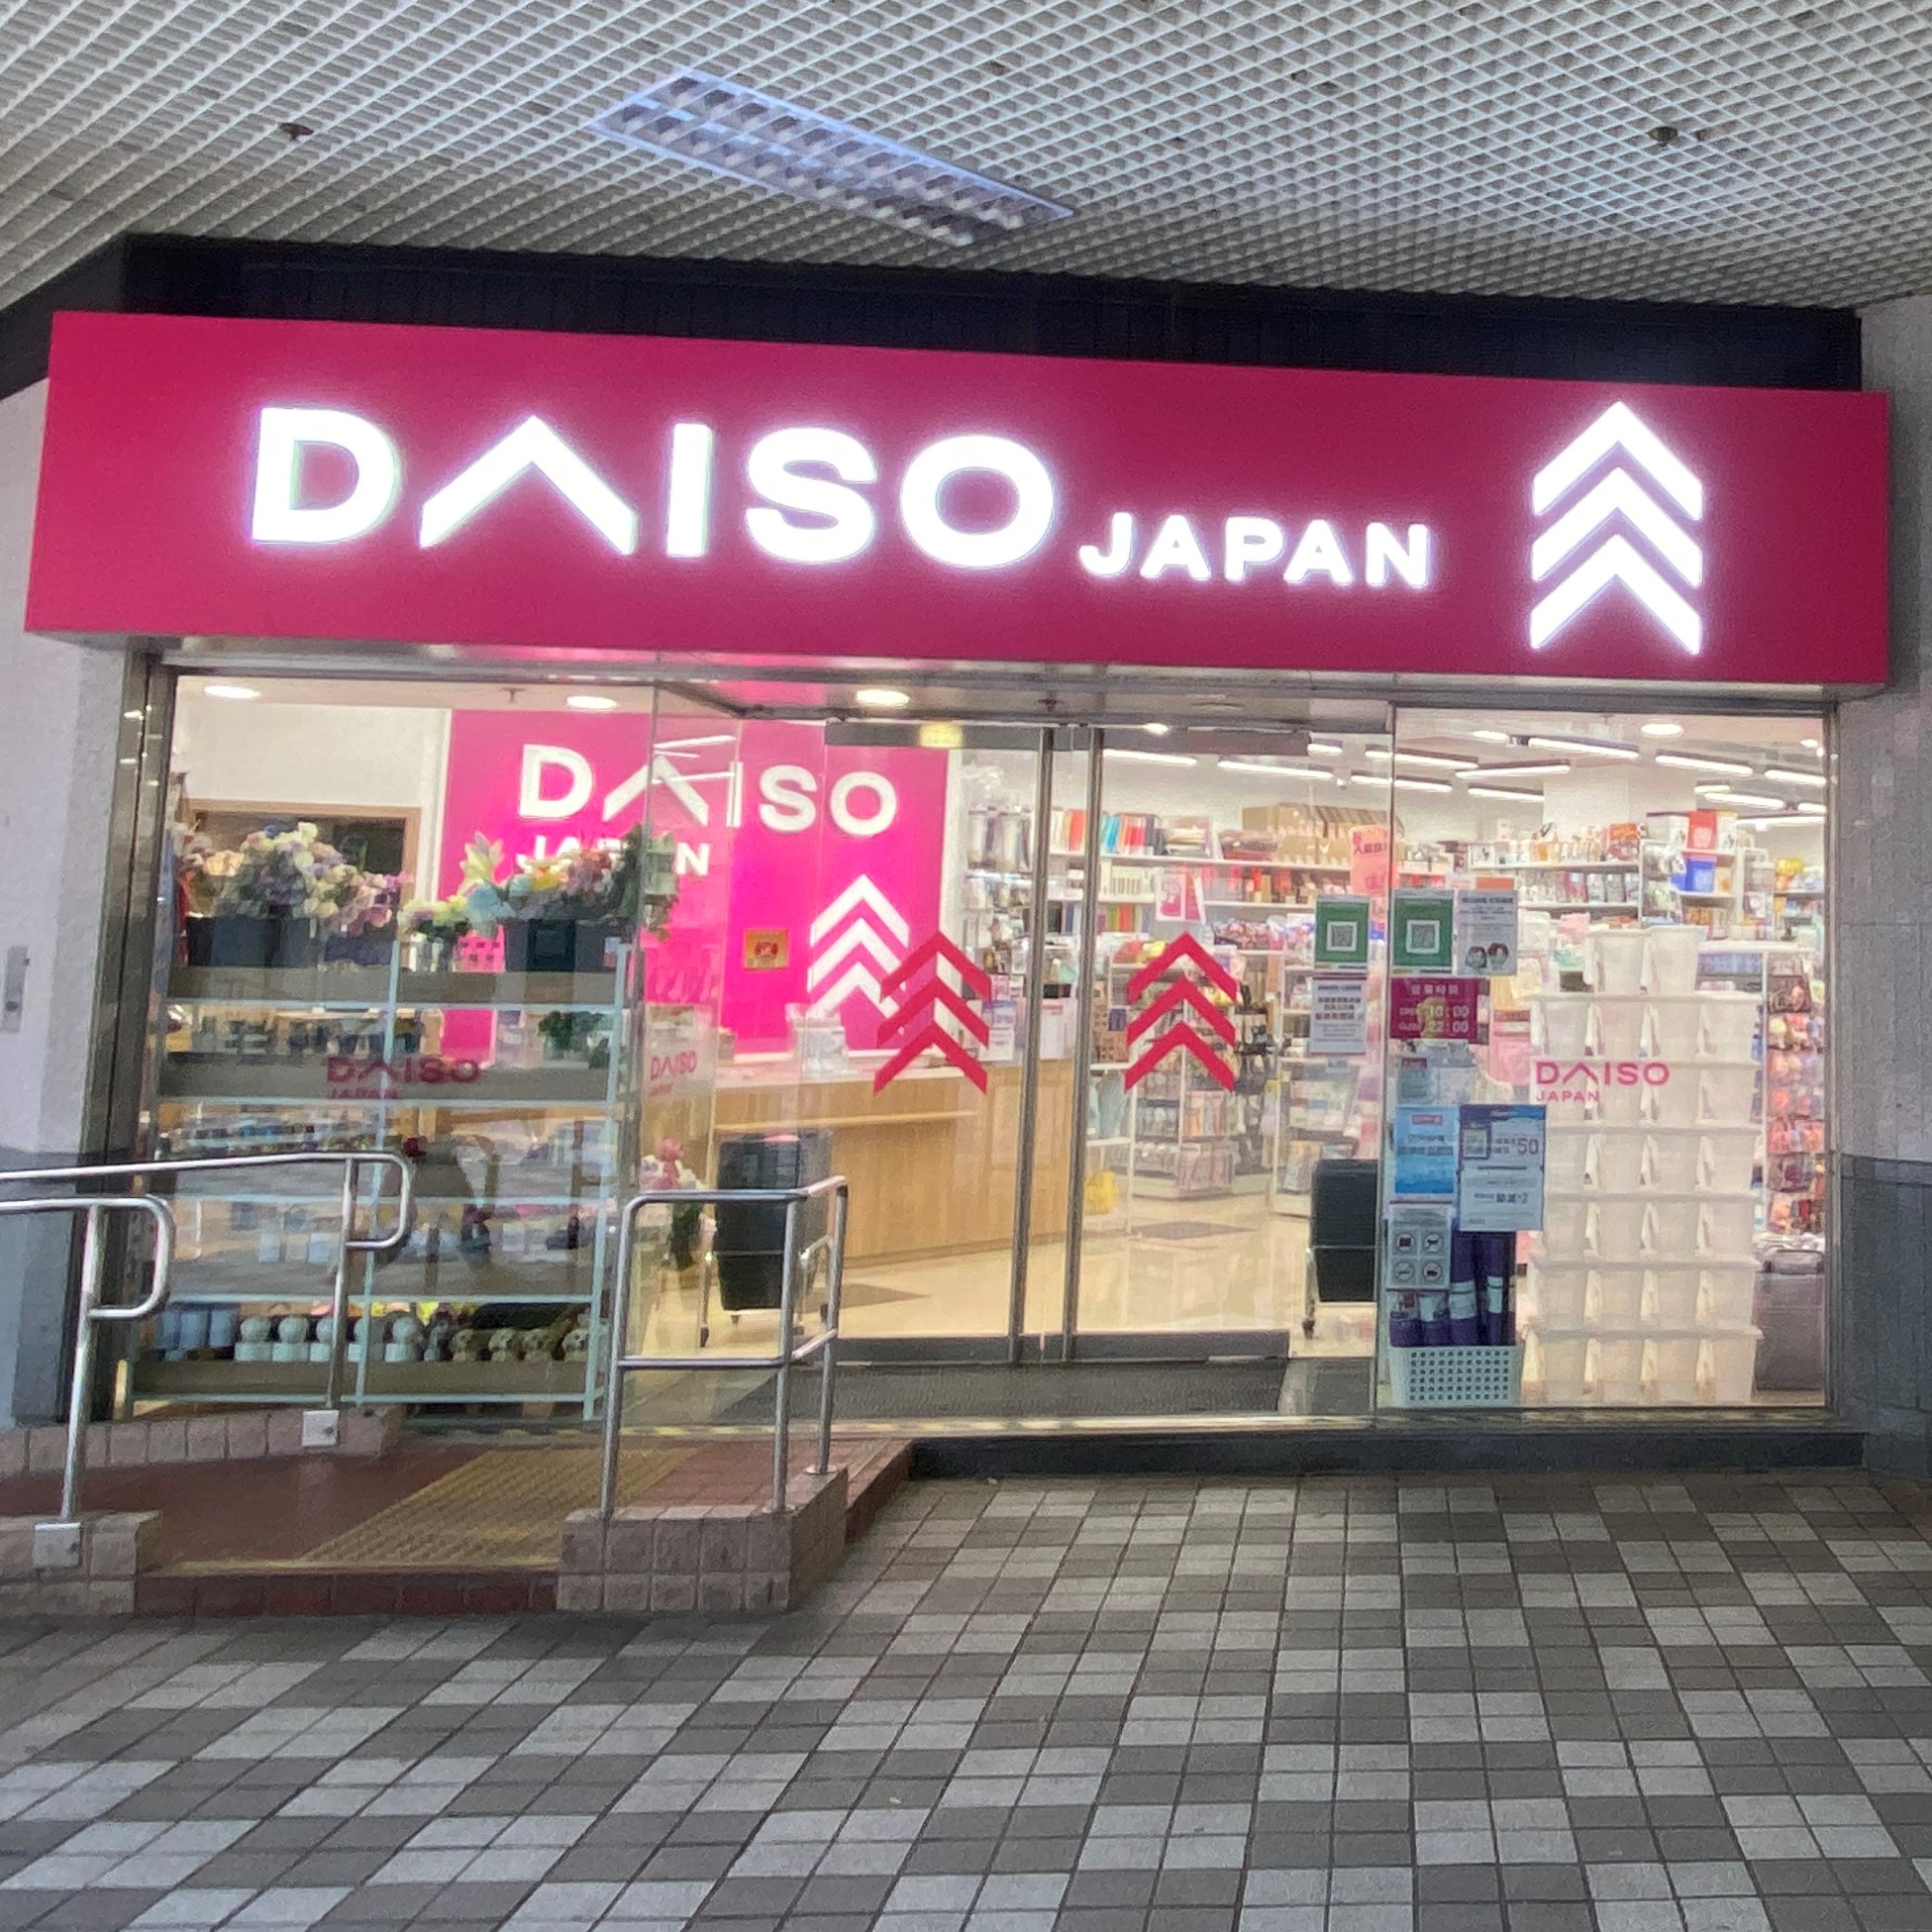 Daiso Japan 竹園店